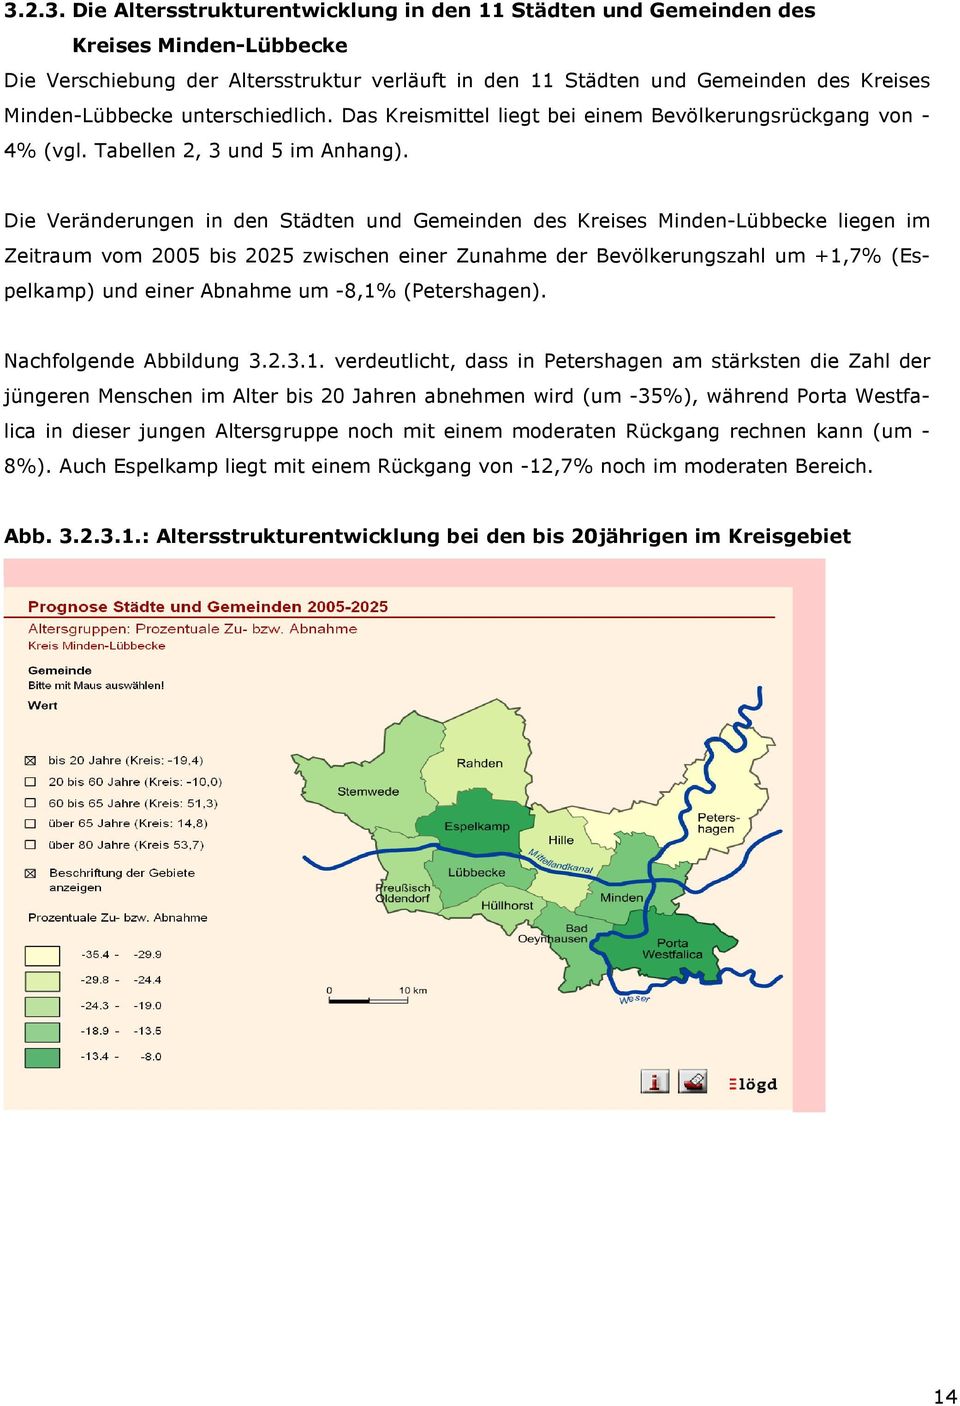 Die Veränderungen in den Städten und Gemeinden des Kreises Minden-Lübbecke liegen im Zeitraum vom 2005 bis 2025 zwischen einer Zunahme der Bevölkerungszahl um +1,7% (Espelkamp) und einer Abnahme um